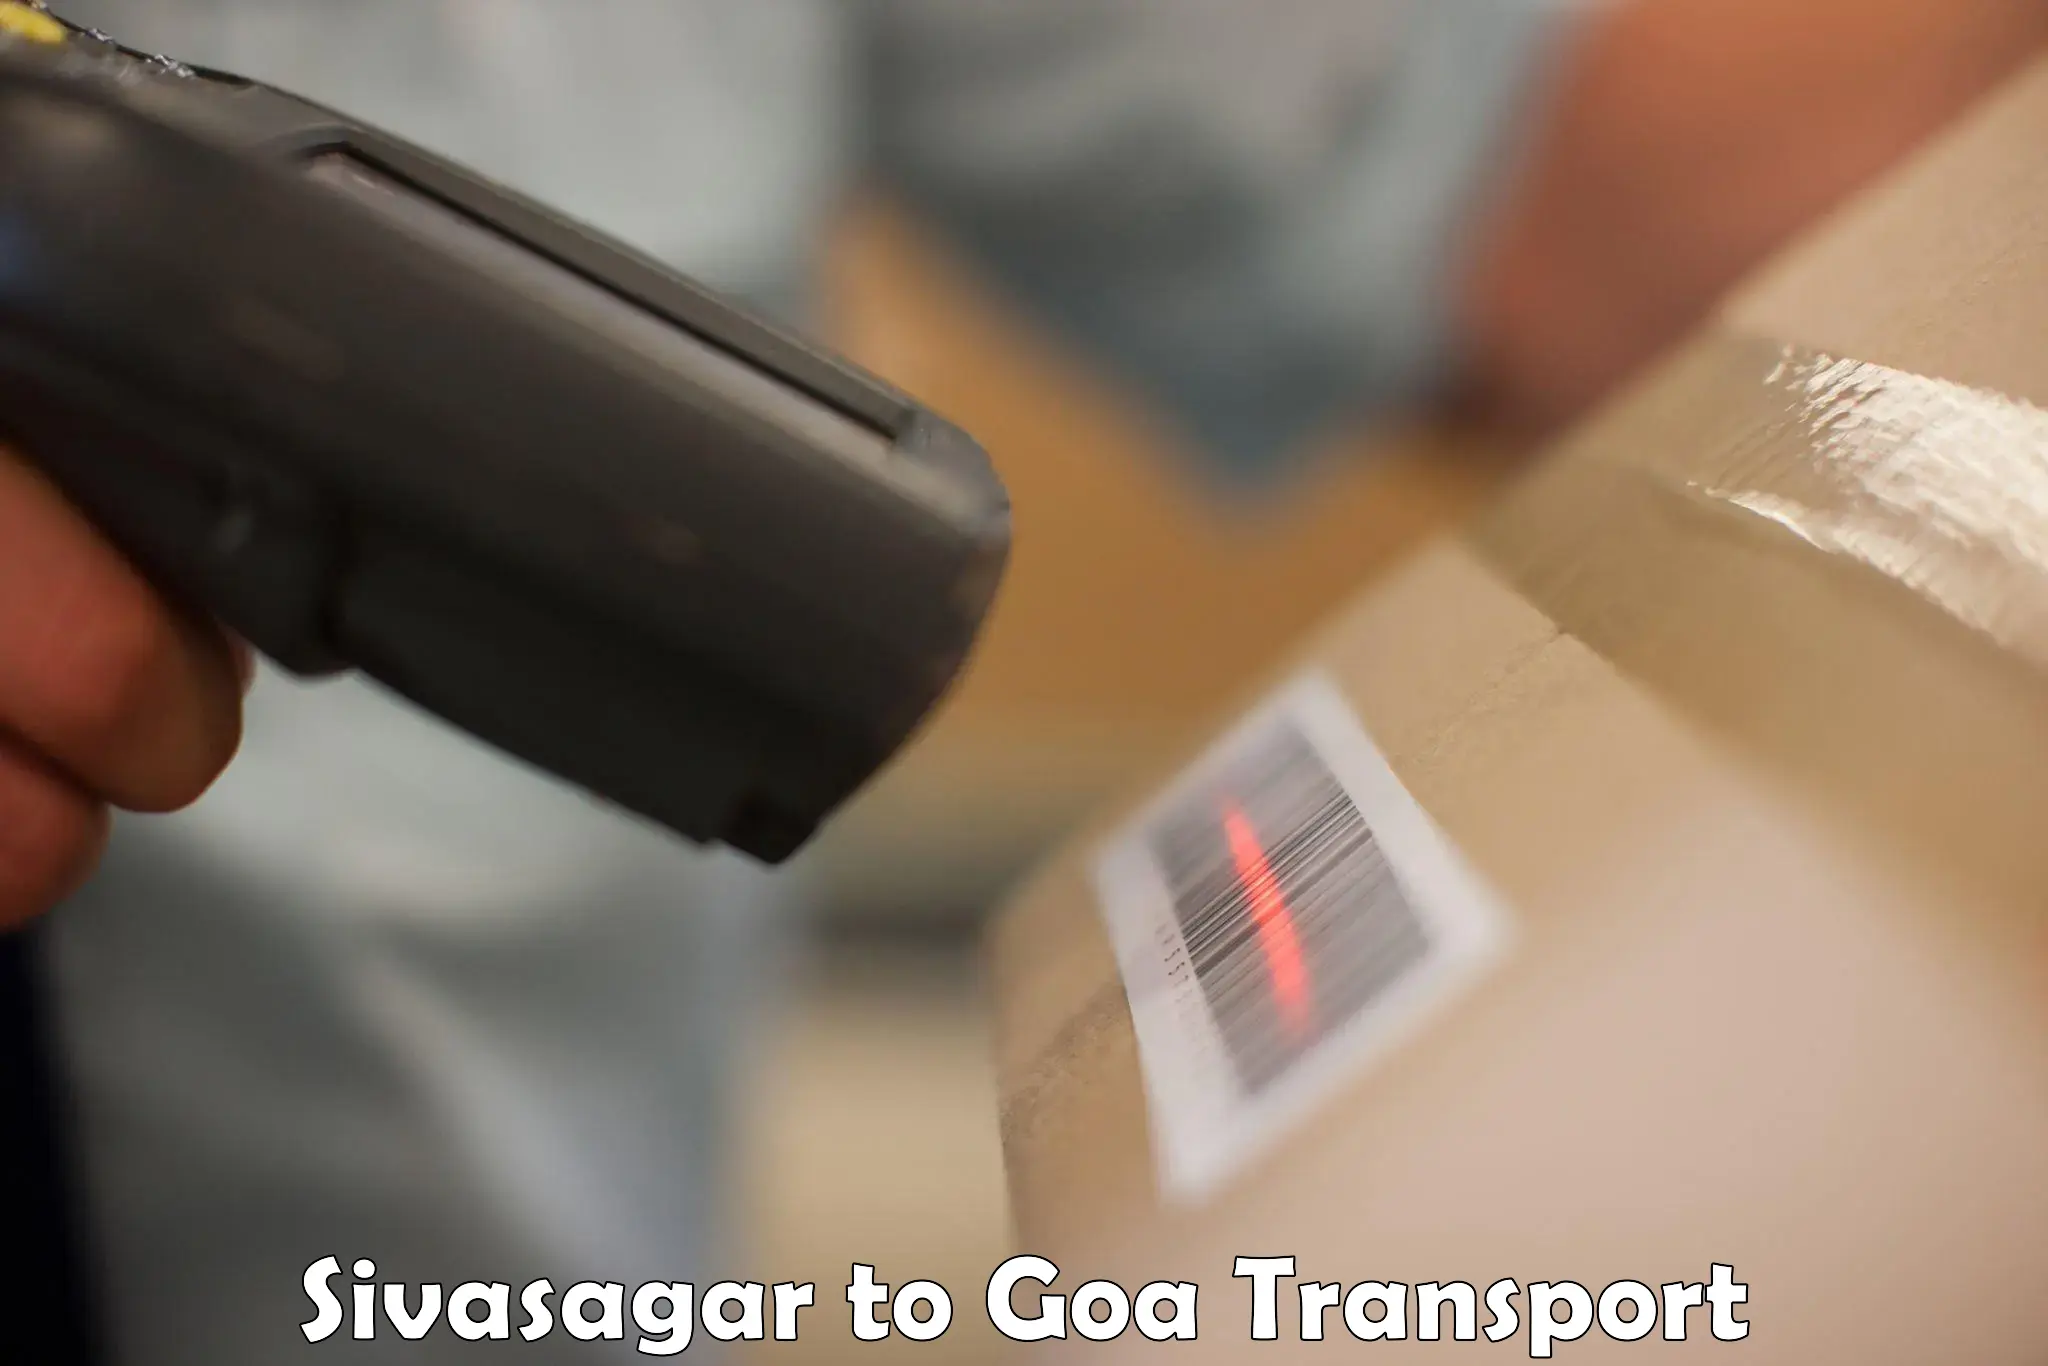 Shipping services Sivasagar to Margao